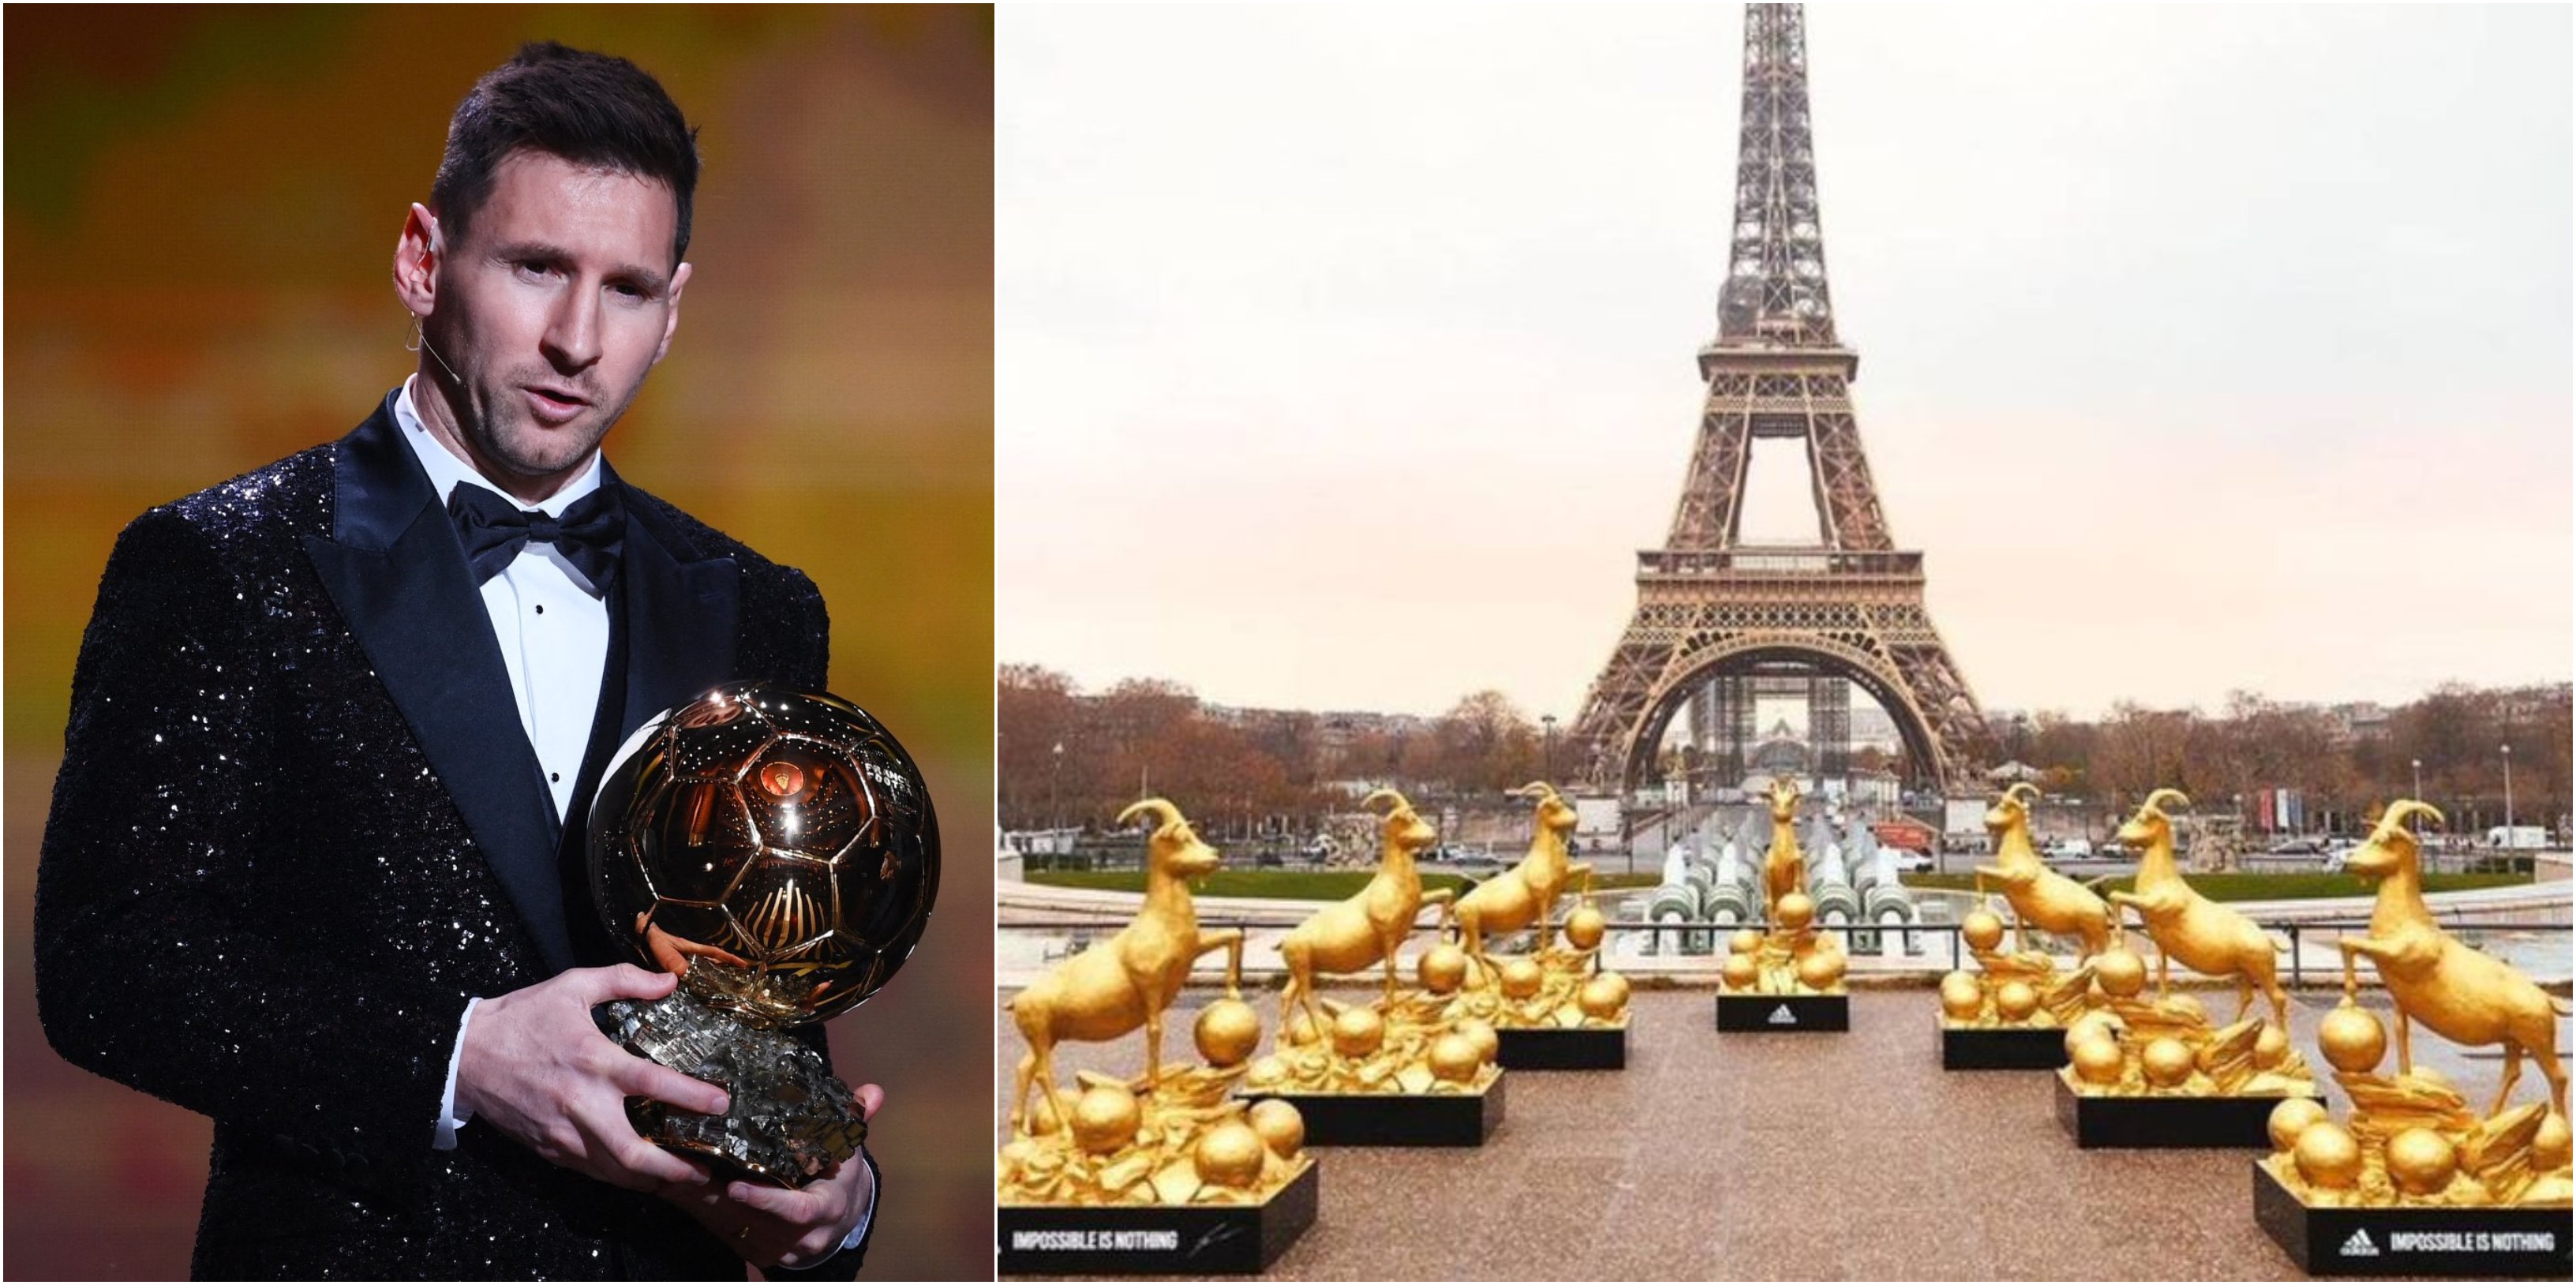 Leo Messi recibió el 29 de noviembre el Balón de Oro. Un día después colocaron siete cabras cerca de la icónica Torre Eiffel. Foto AFP y redes.  